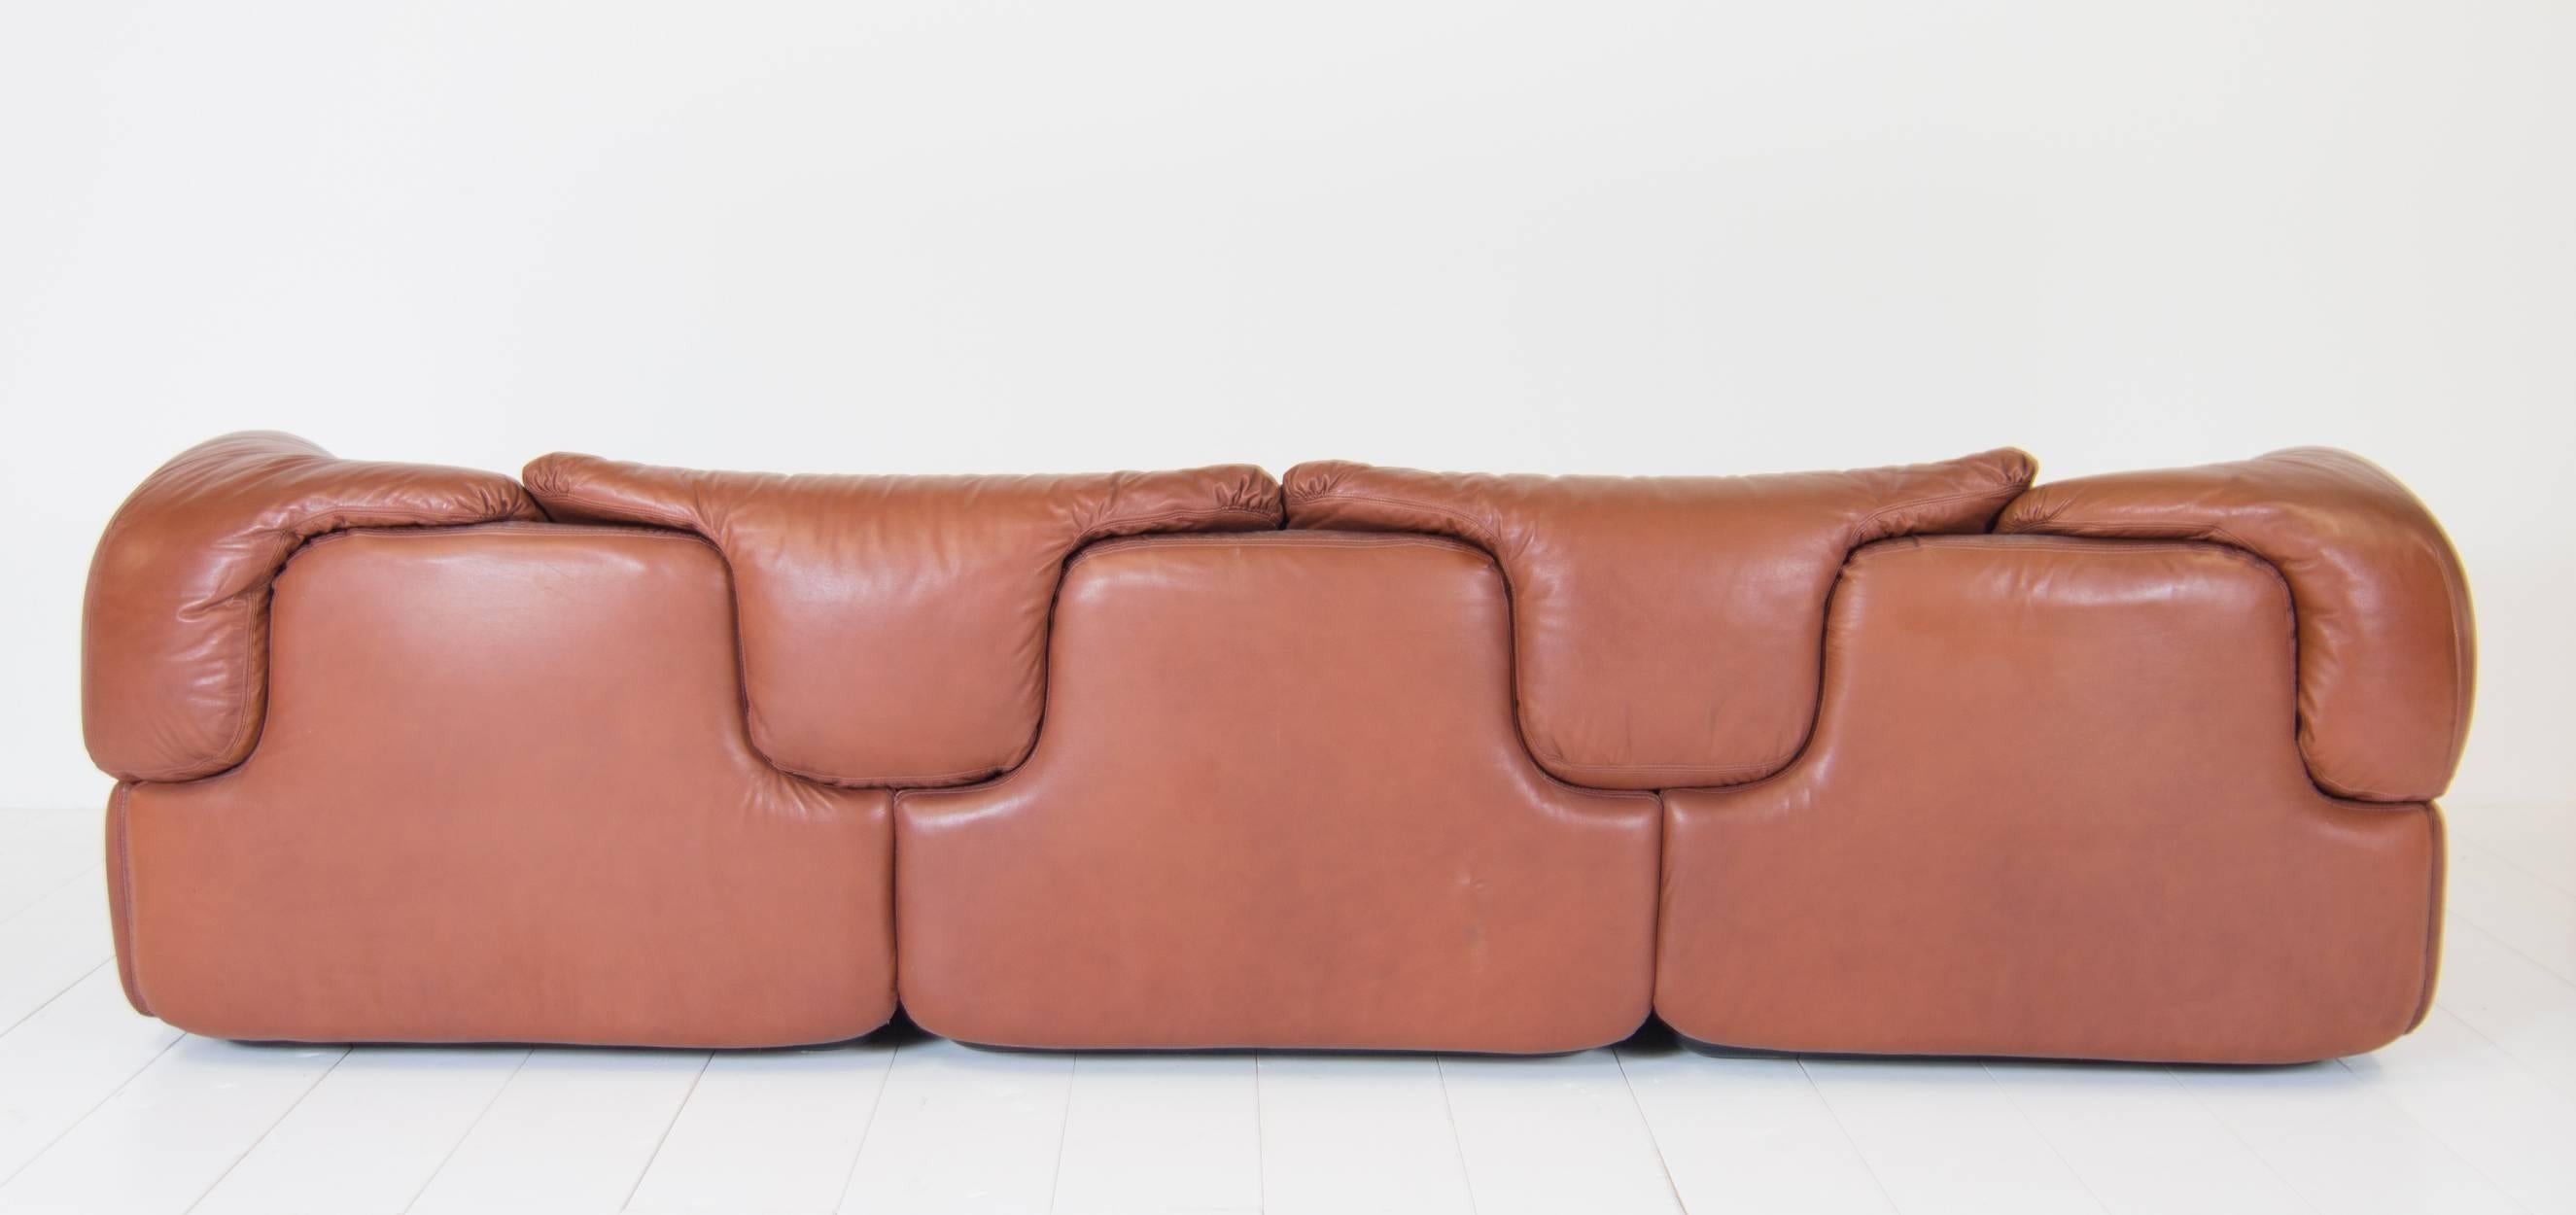 Italian Saporiti Sofa Designed by Alberto Rosselli, Model Confidentiala